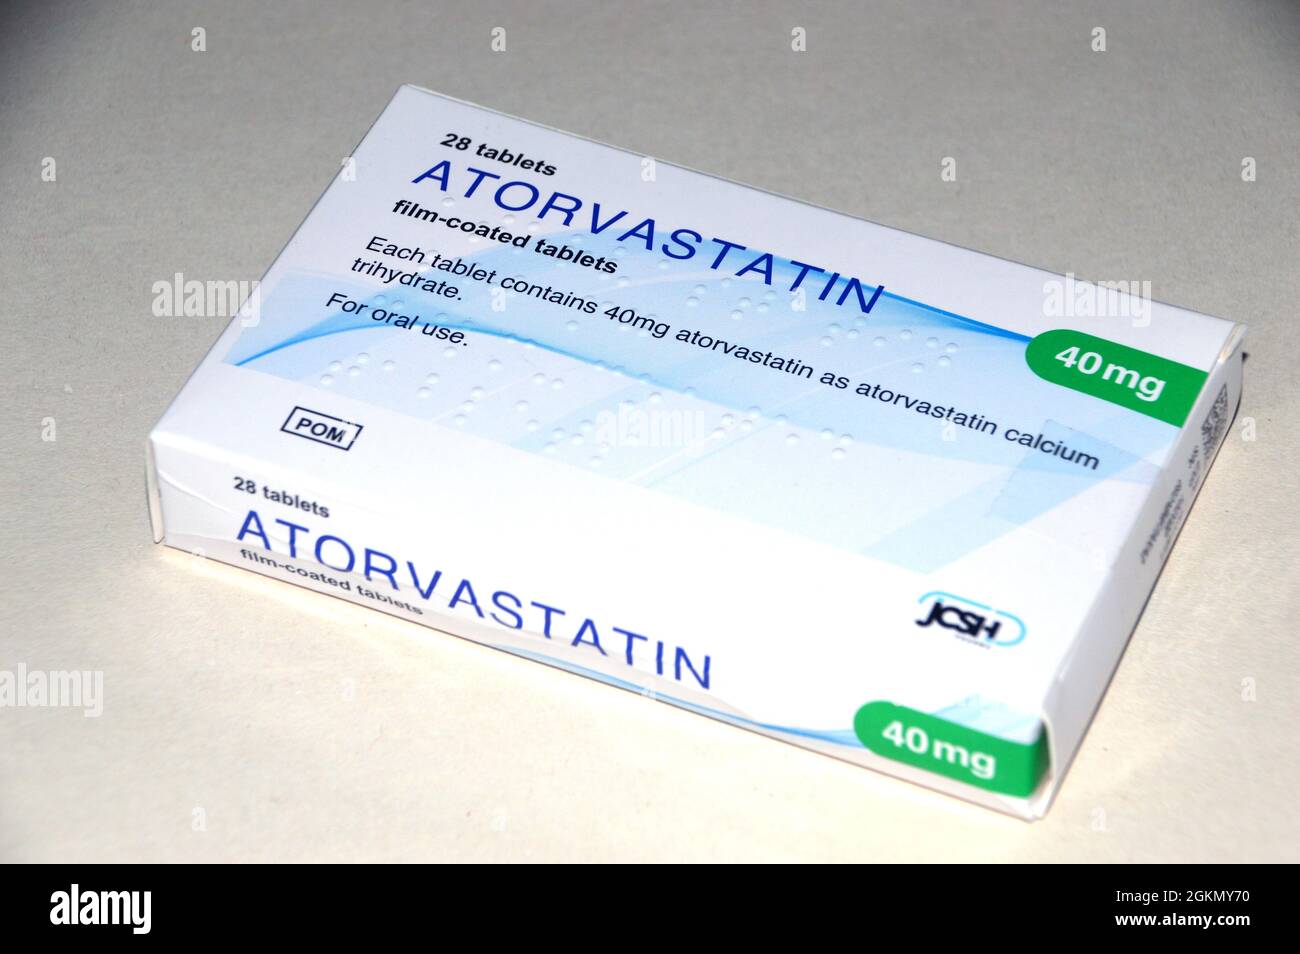 Una scatola di 28 compresse di 'Statin' rivestite con film 40mg di Atorvastatin (Lipitor) fatte da JCSH prescritto per la riduzione del colesterolo, Inghilterra, Regno Unito. Foto Stock